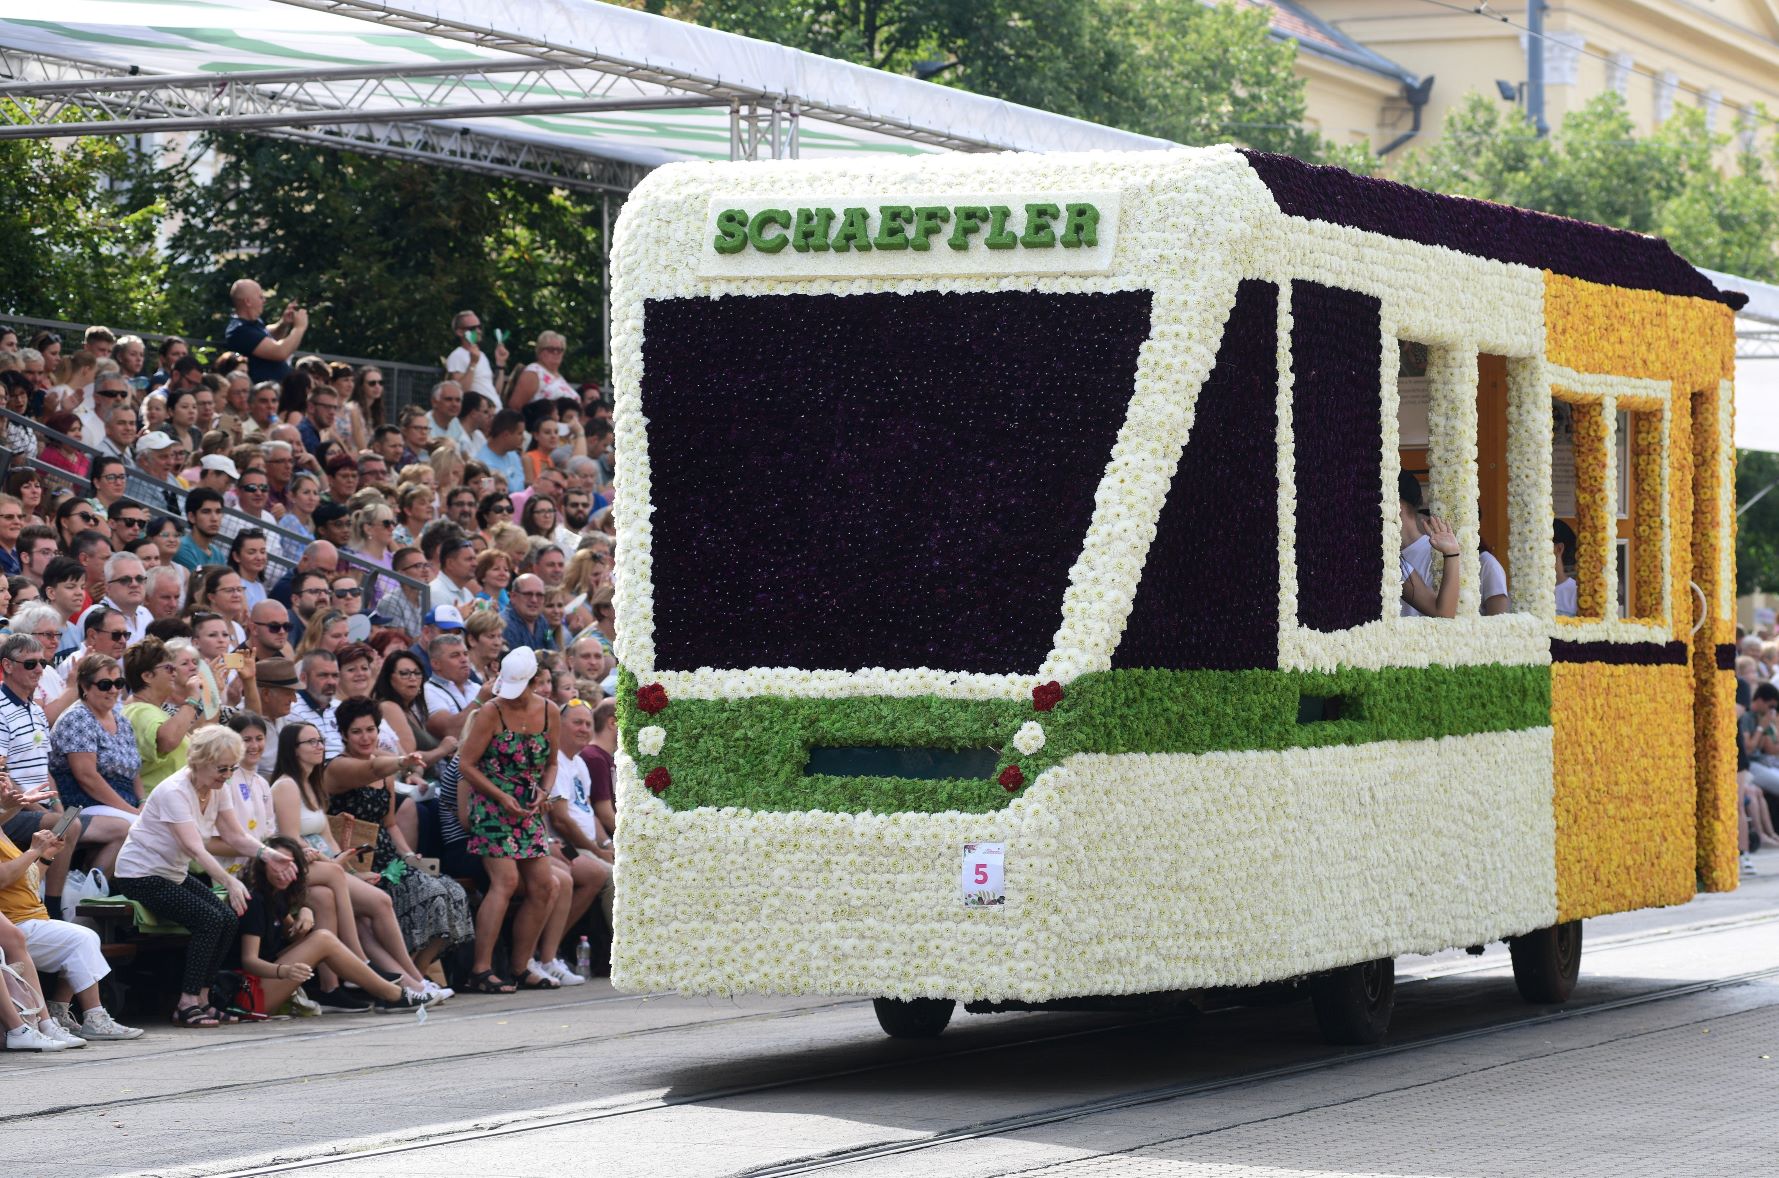 A Schaeffler Magyarország virágkocsija